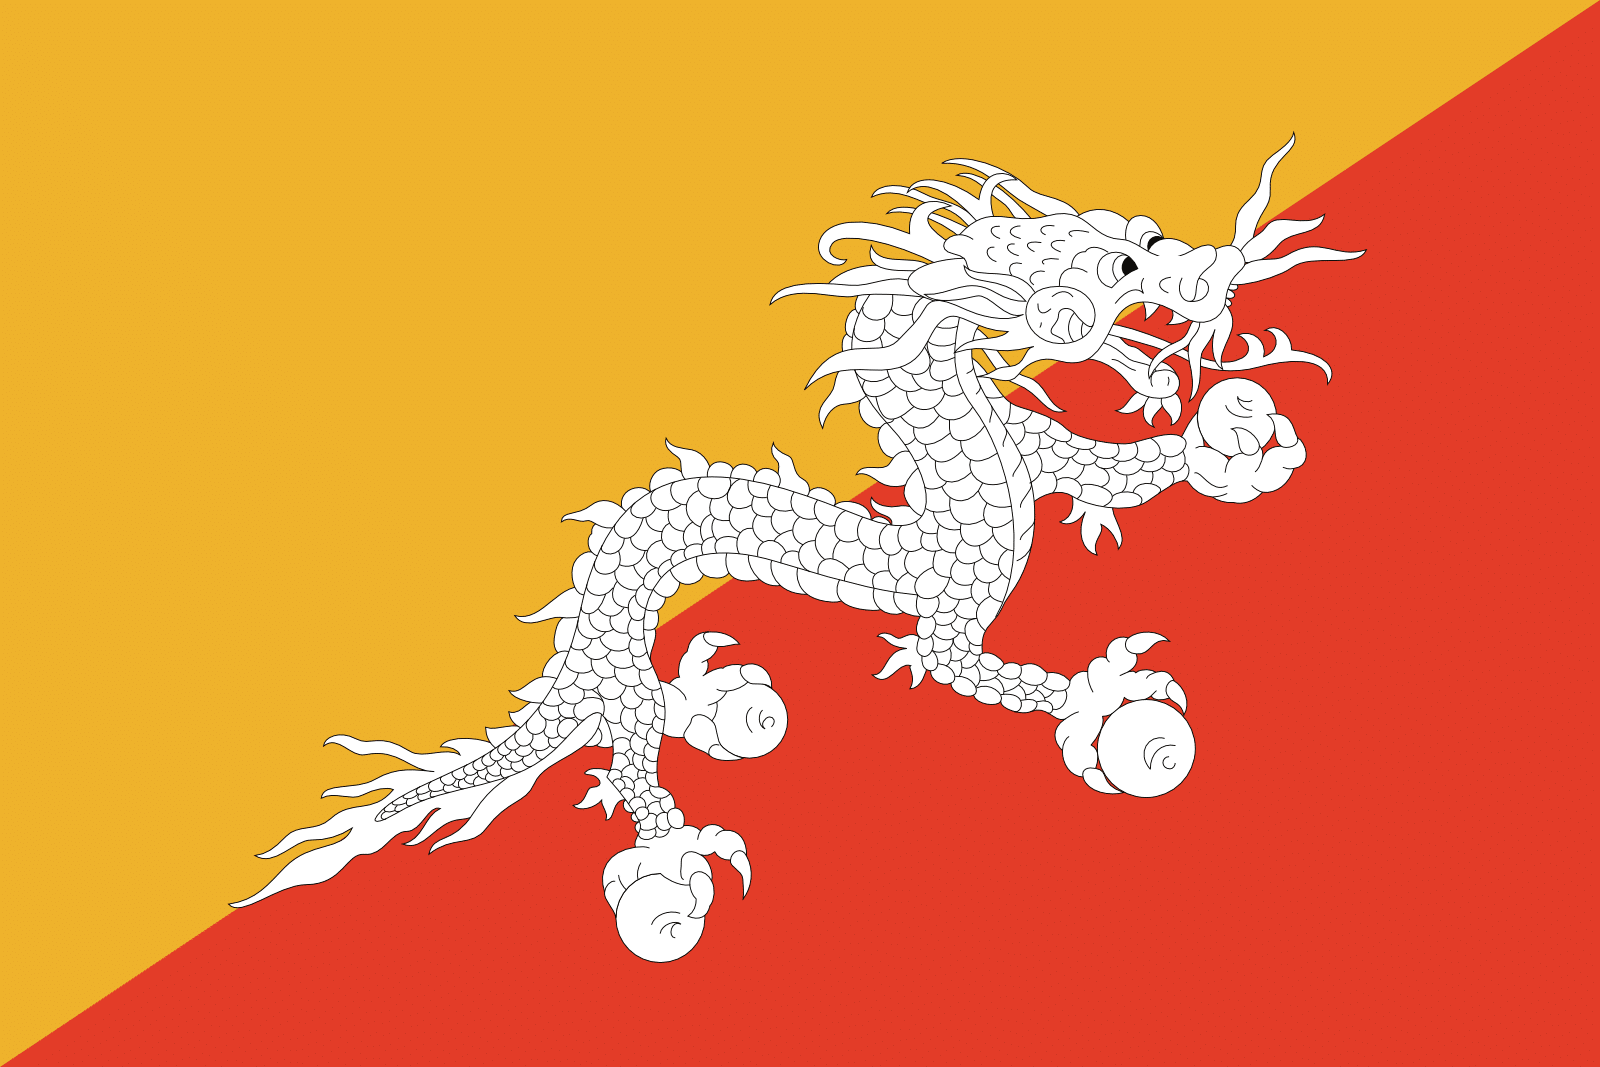 Bhutani lipp